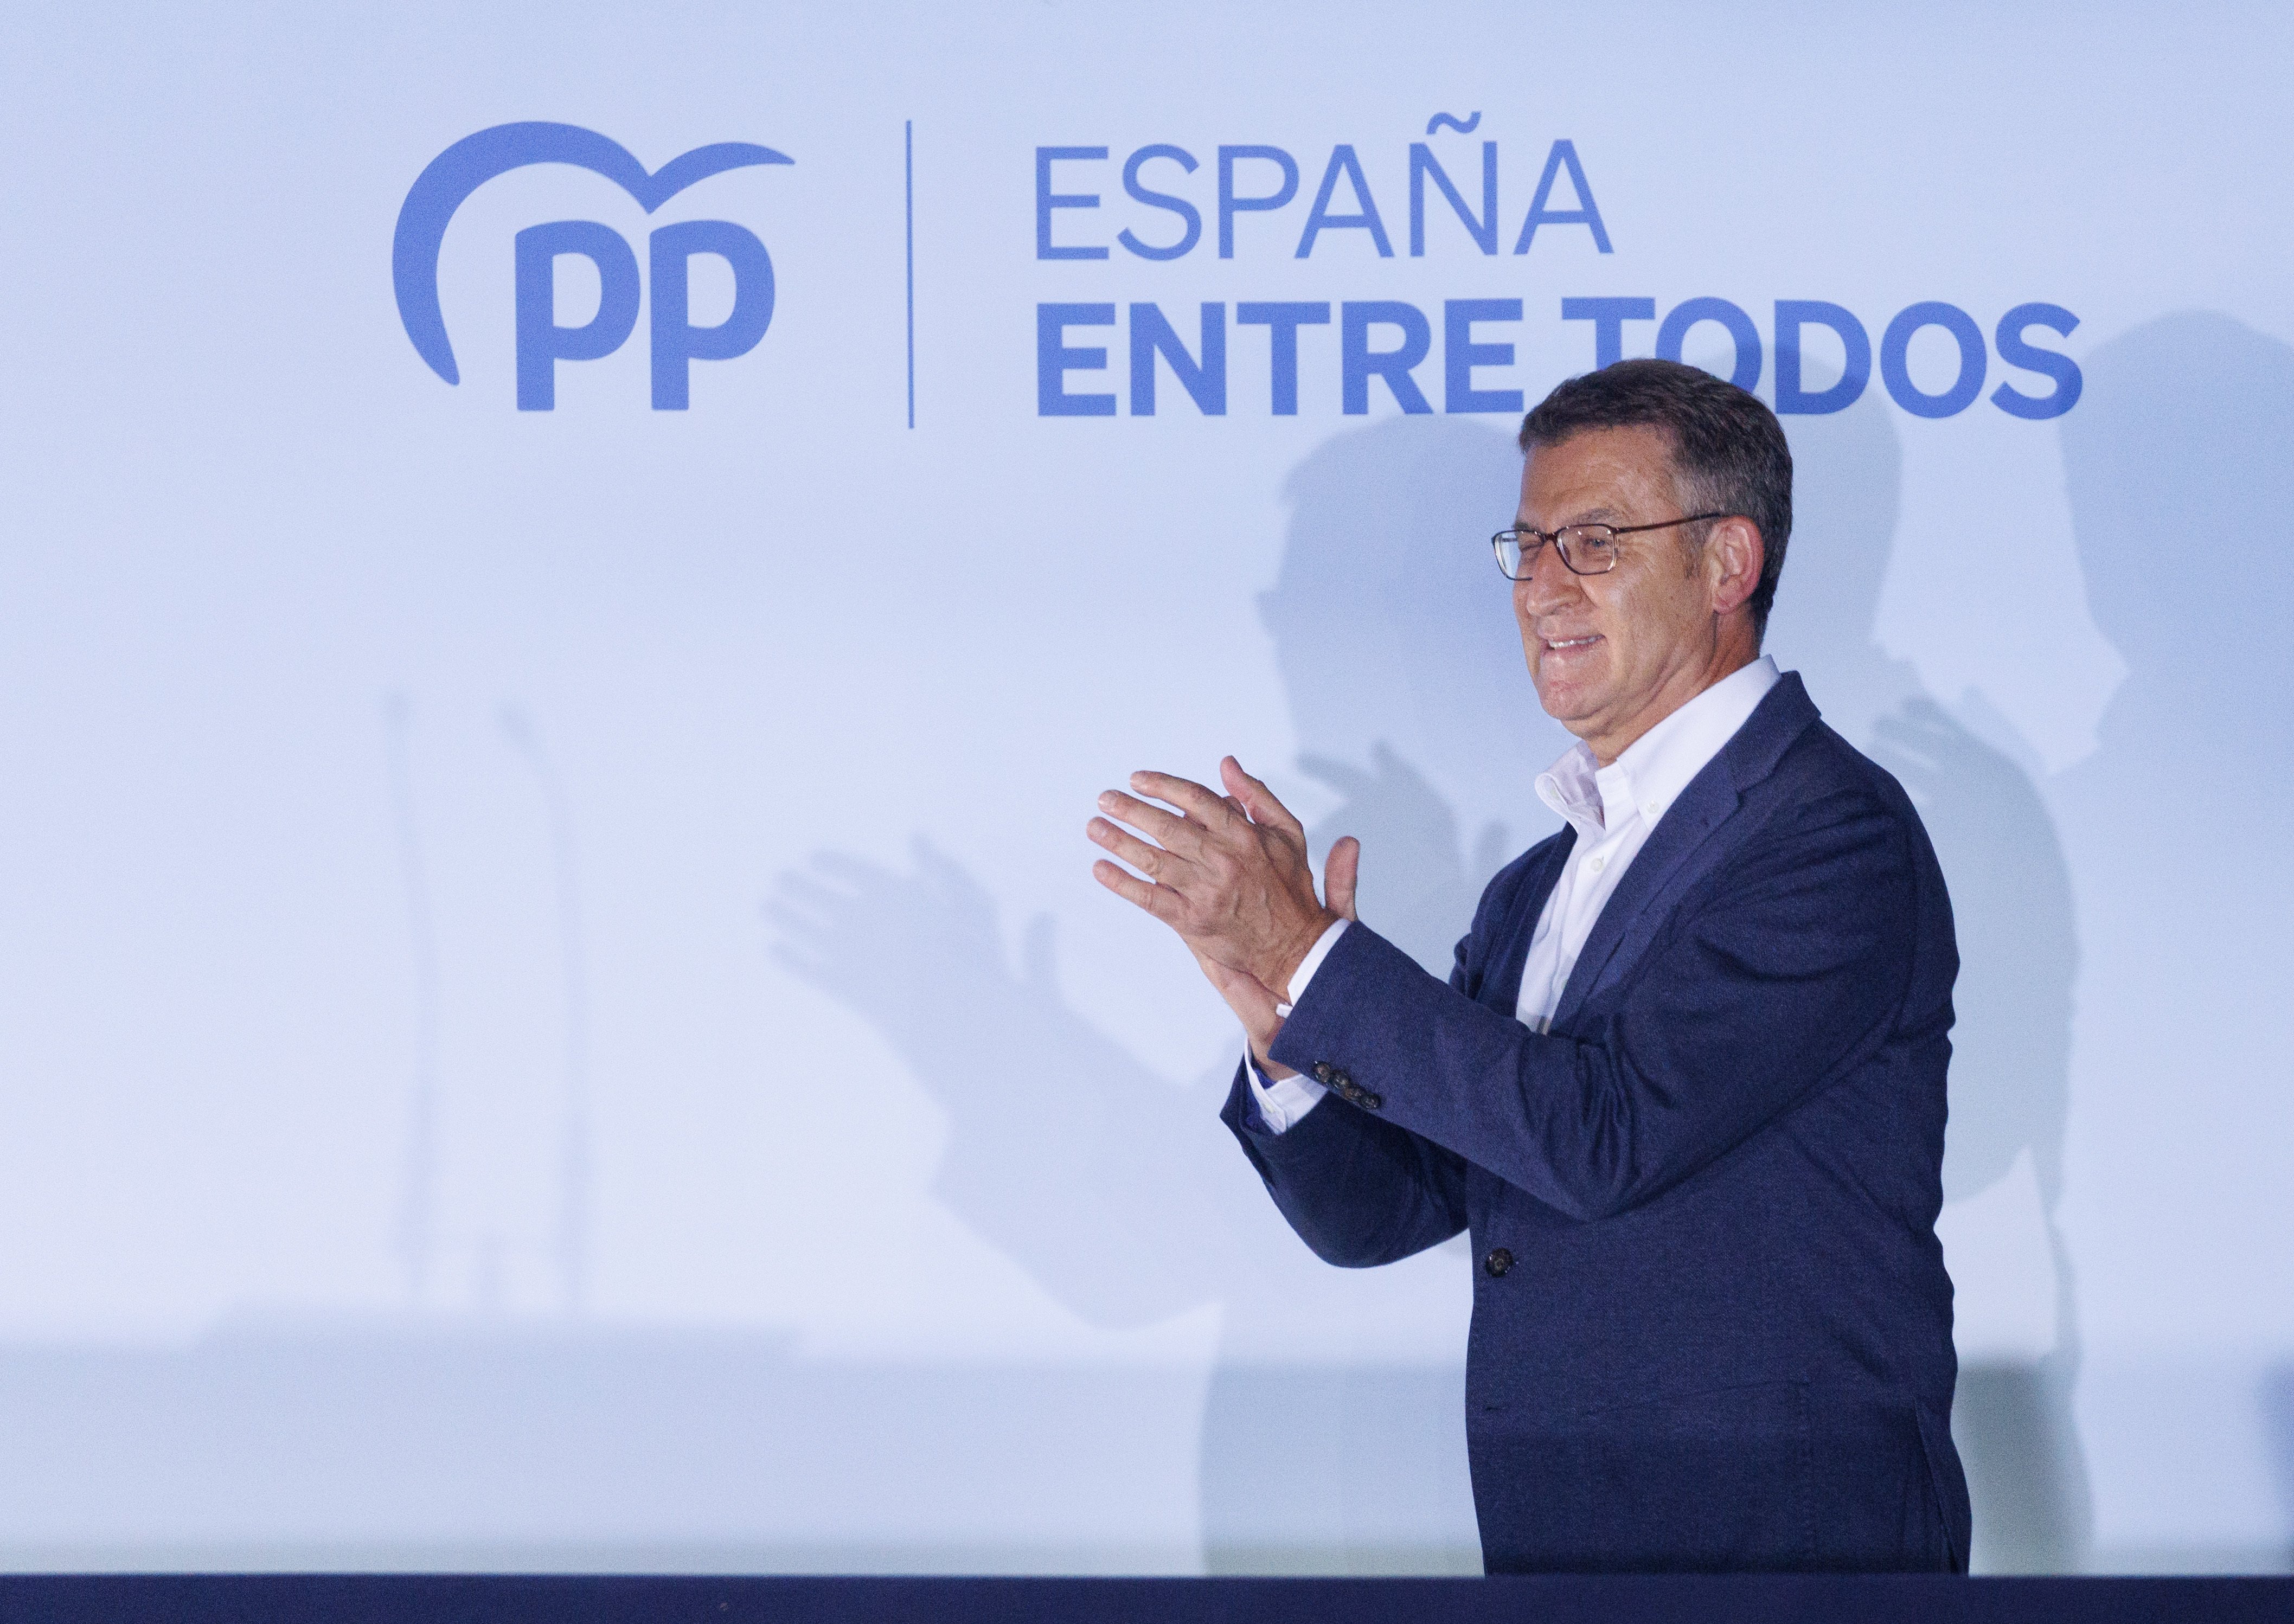 Feijóo treu pit del triomf a les eleccions: “Espanya ha iniciat un nou cicle polític”